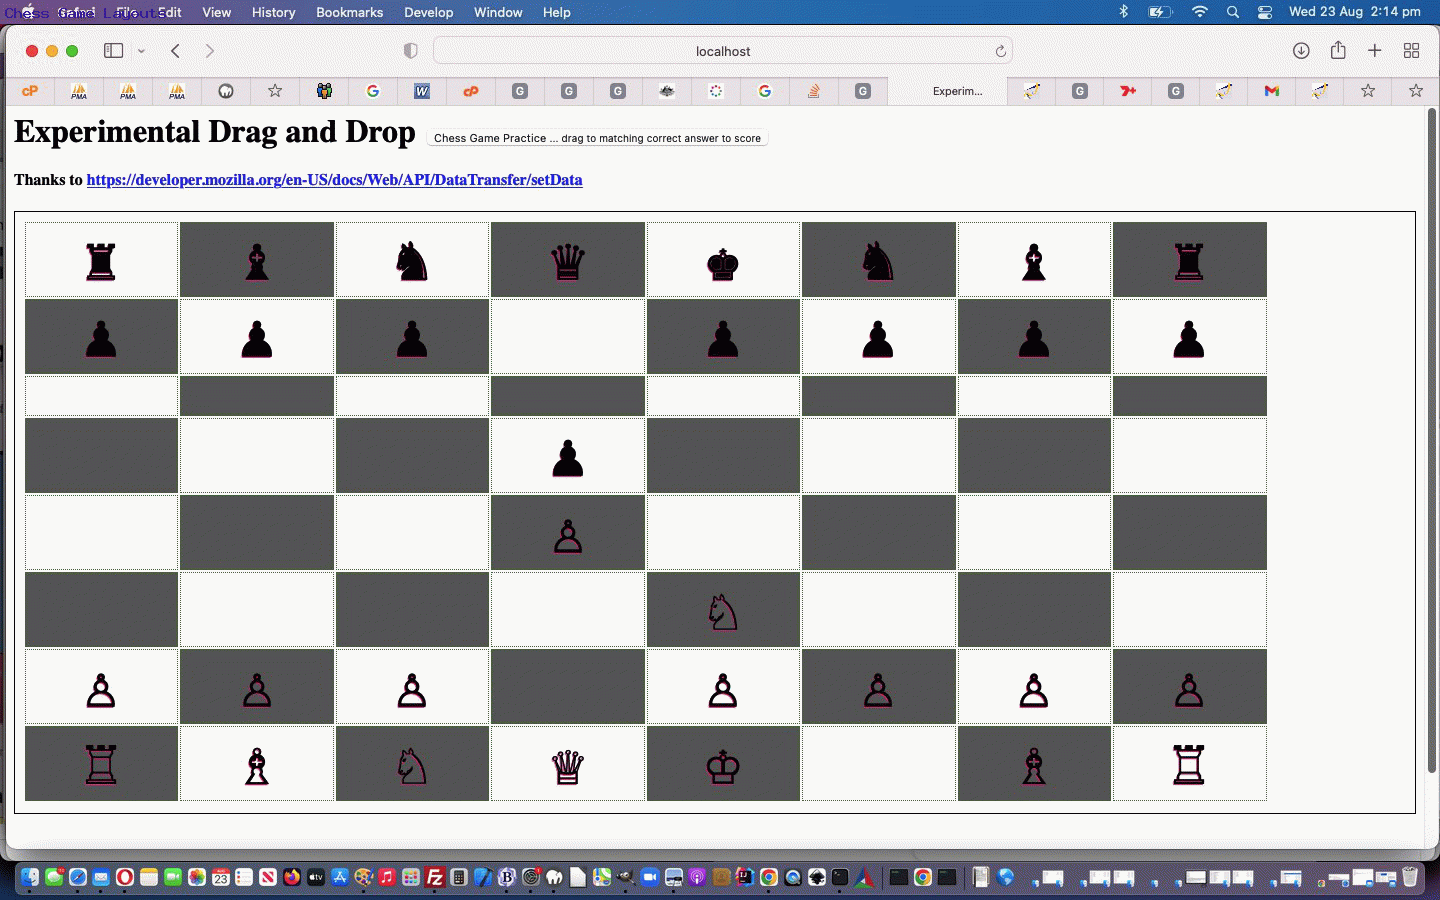 File:Chess Board.svg - Wikipedia